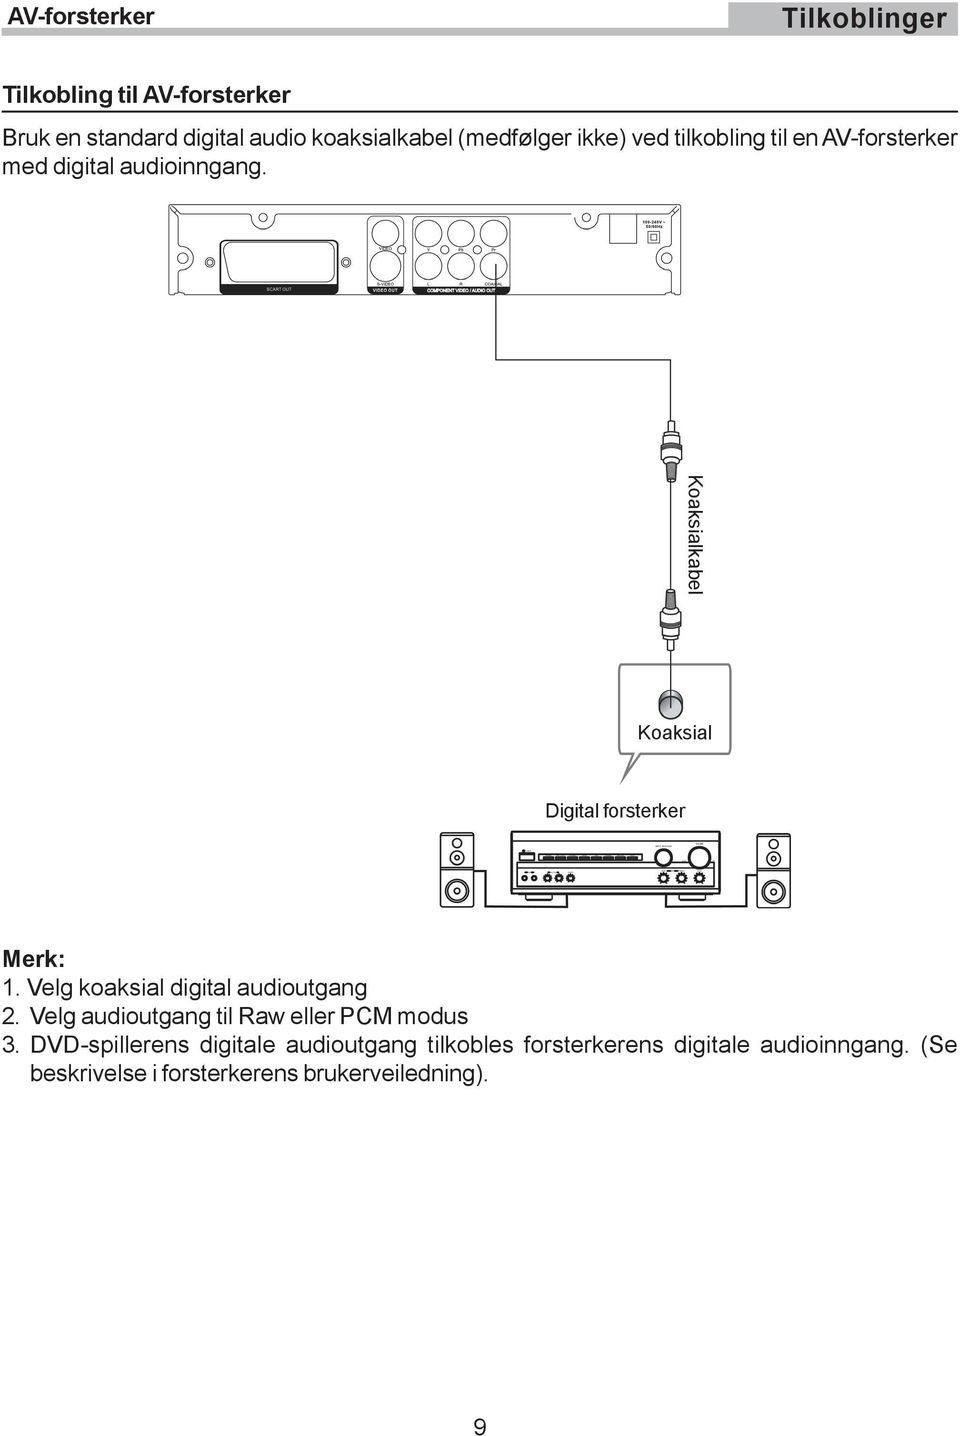 Koaksialkabel Koaksial Digital forsterker Merk: 1. Velg koaksial digital audioutgang 2.